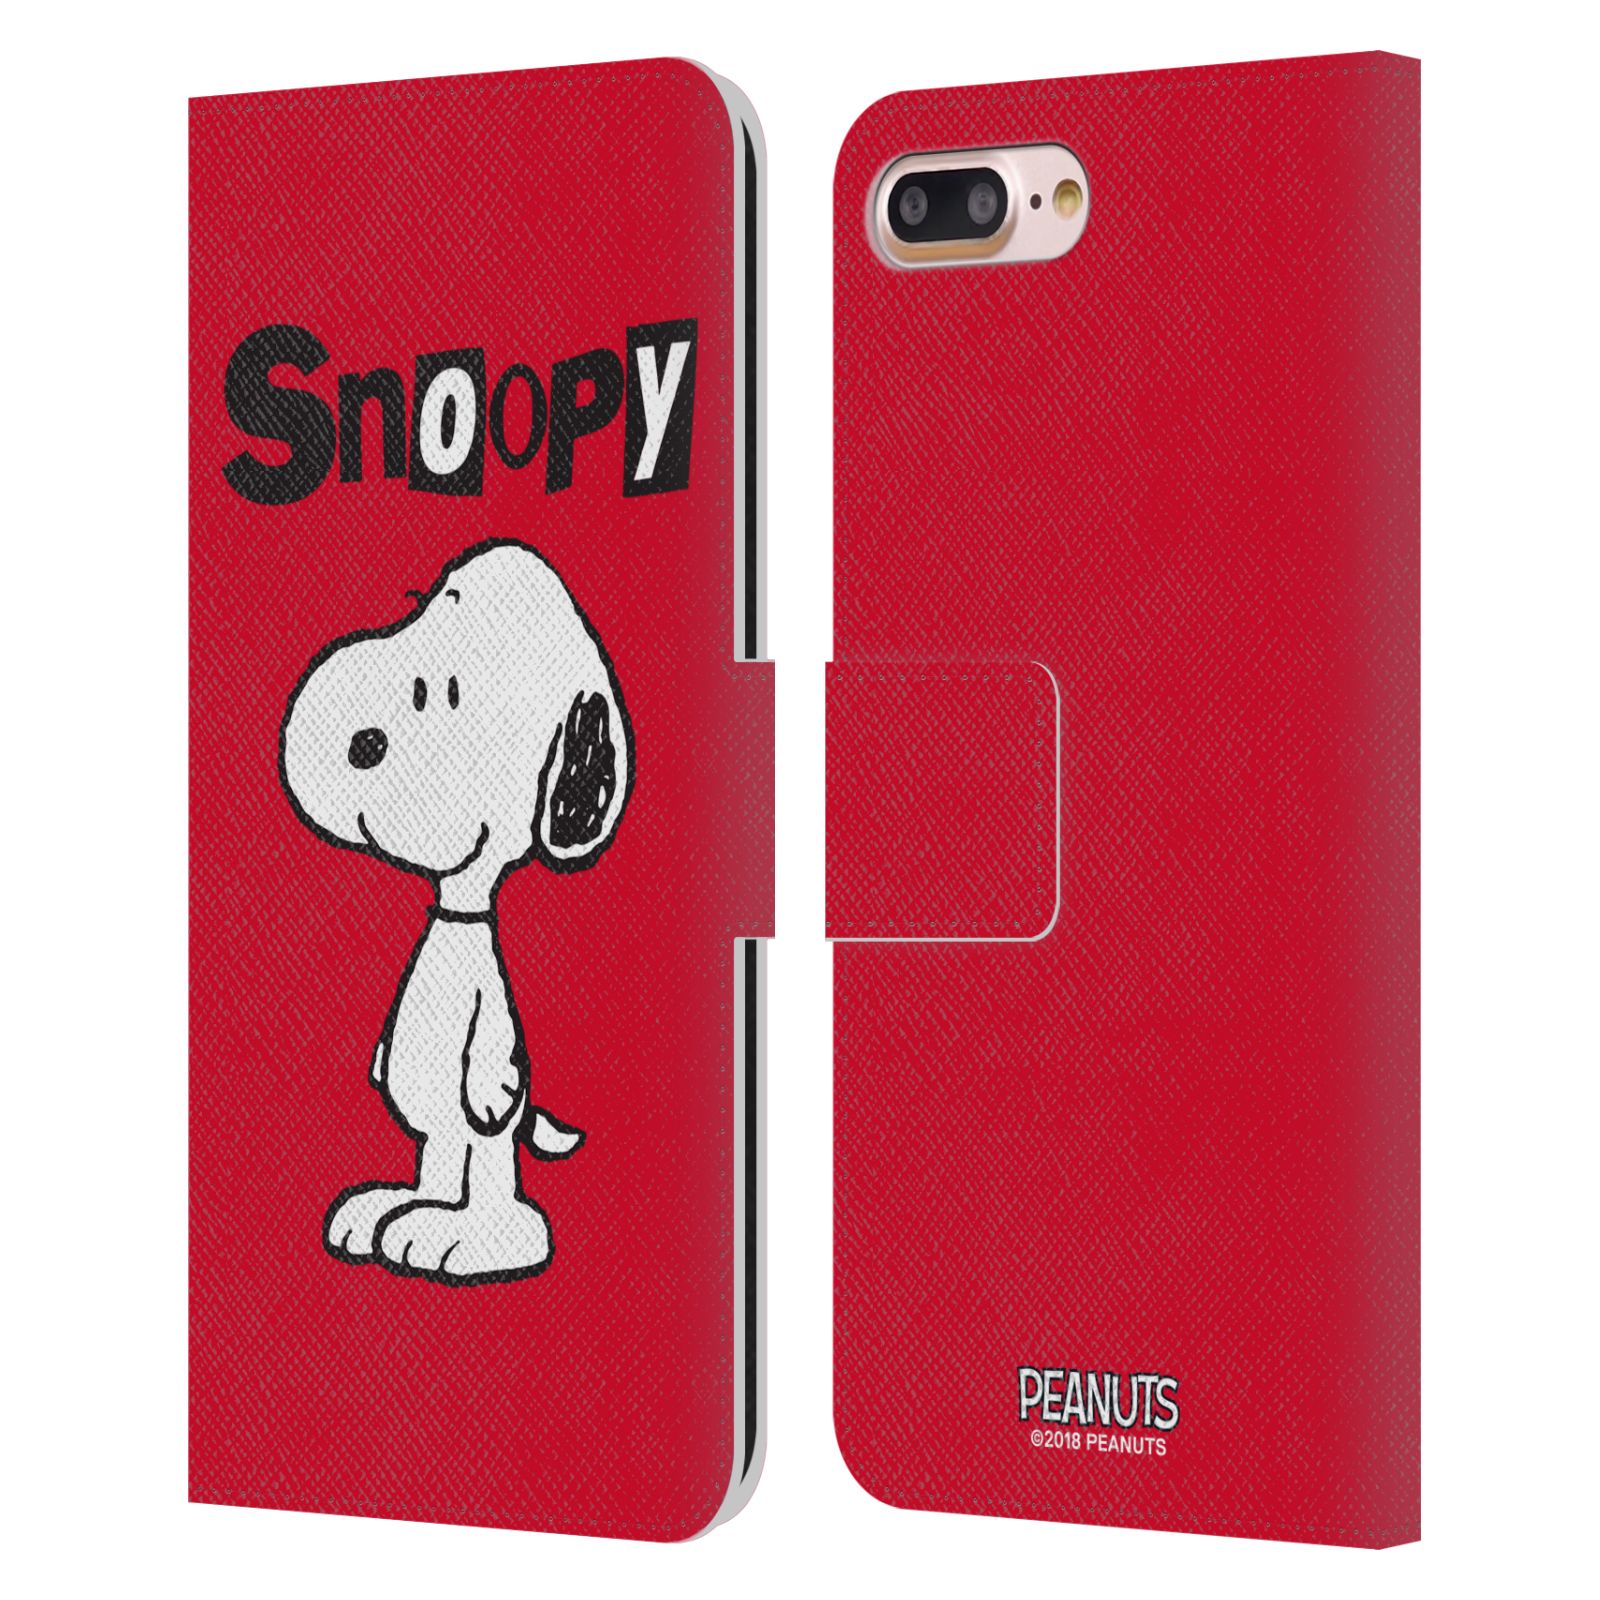 Pouzdro na mobil Apple Iphone 7+/8+ - HEAD CASE - Peanuts - Snoopy červená